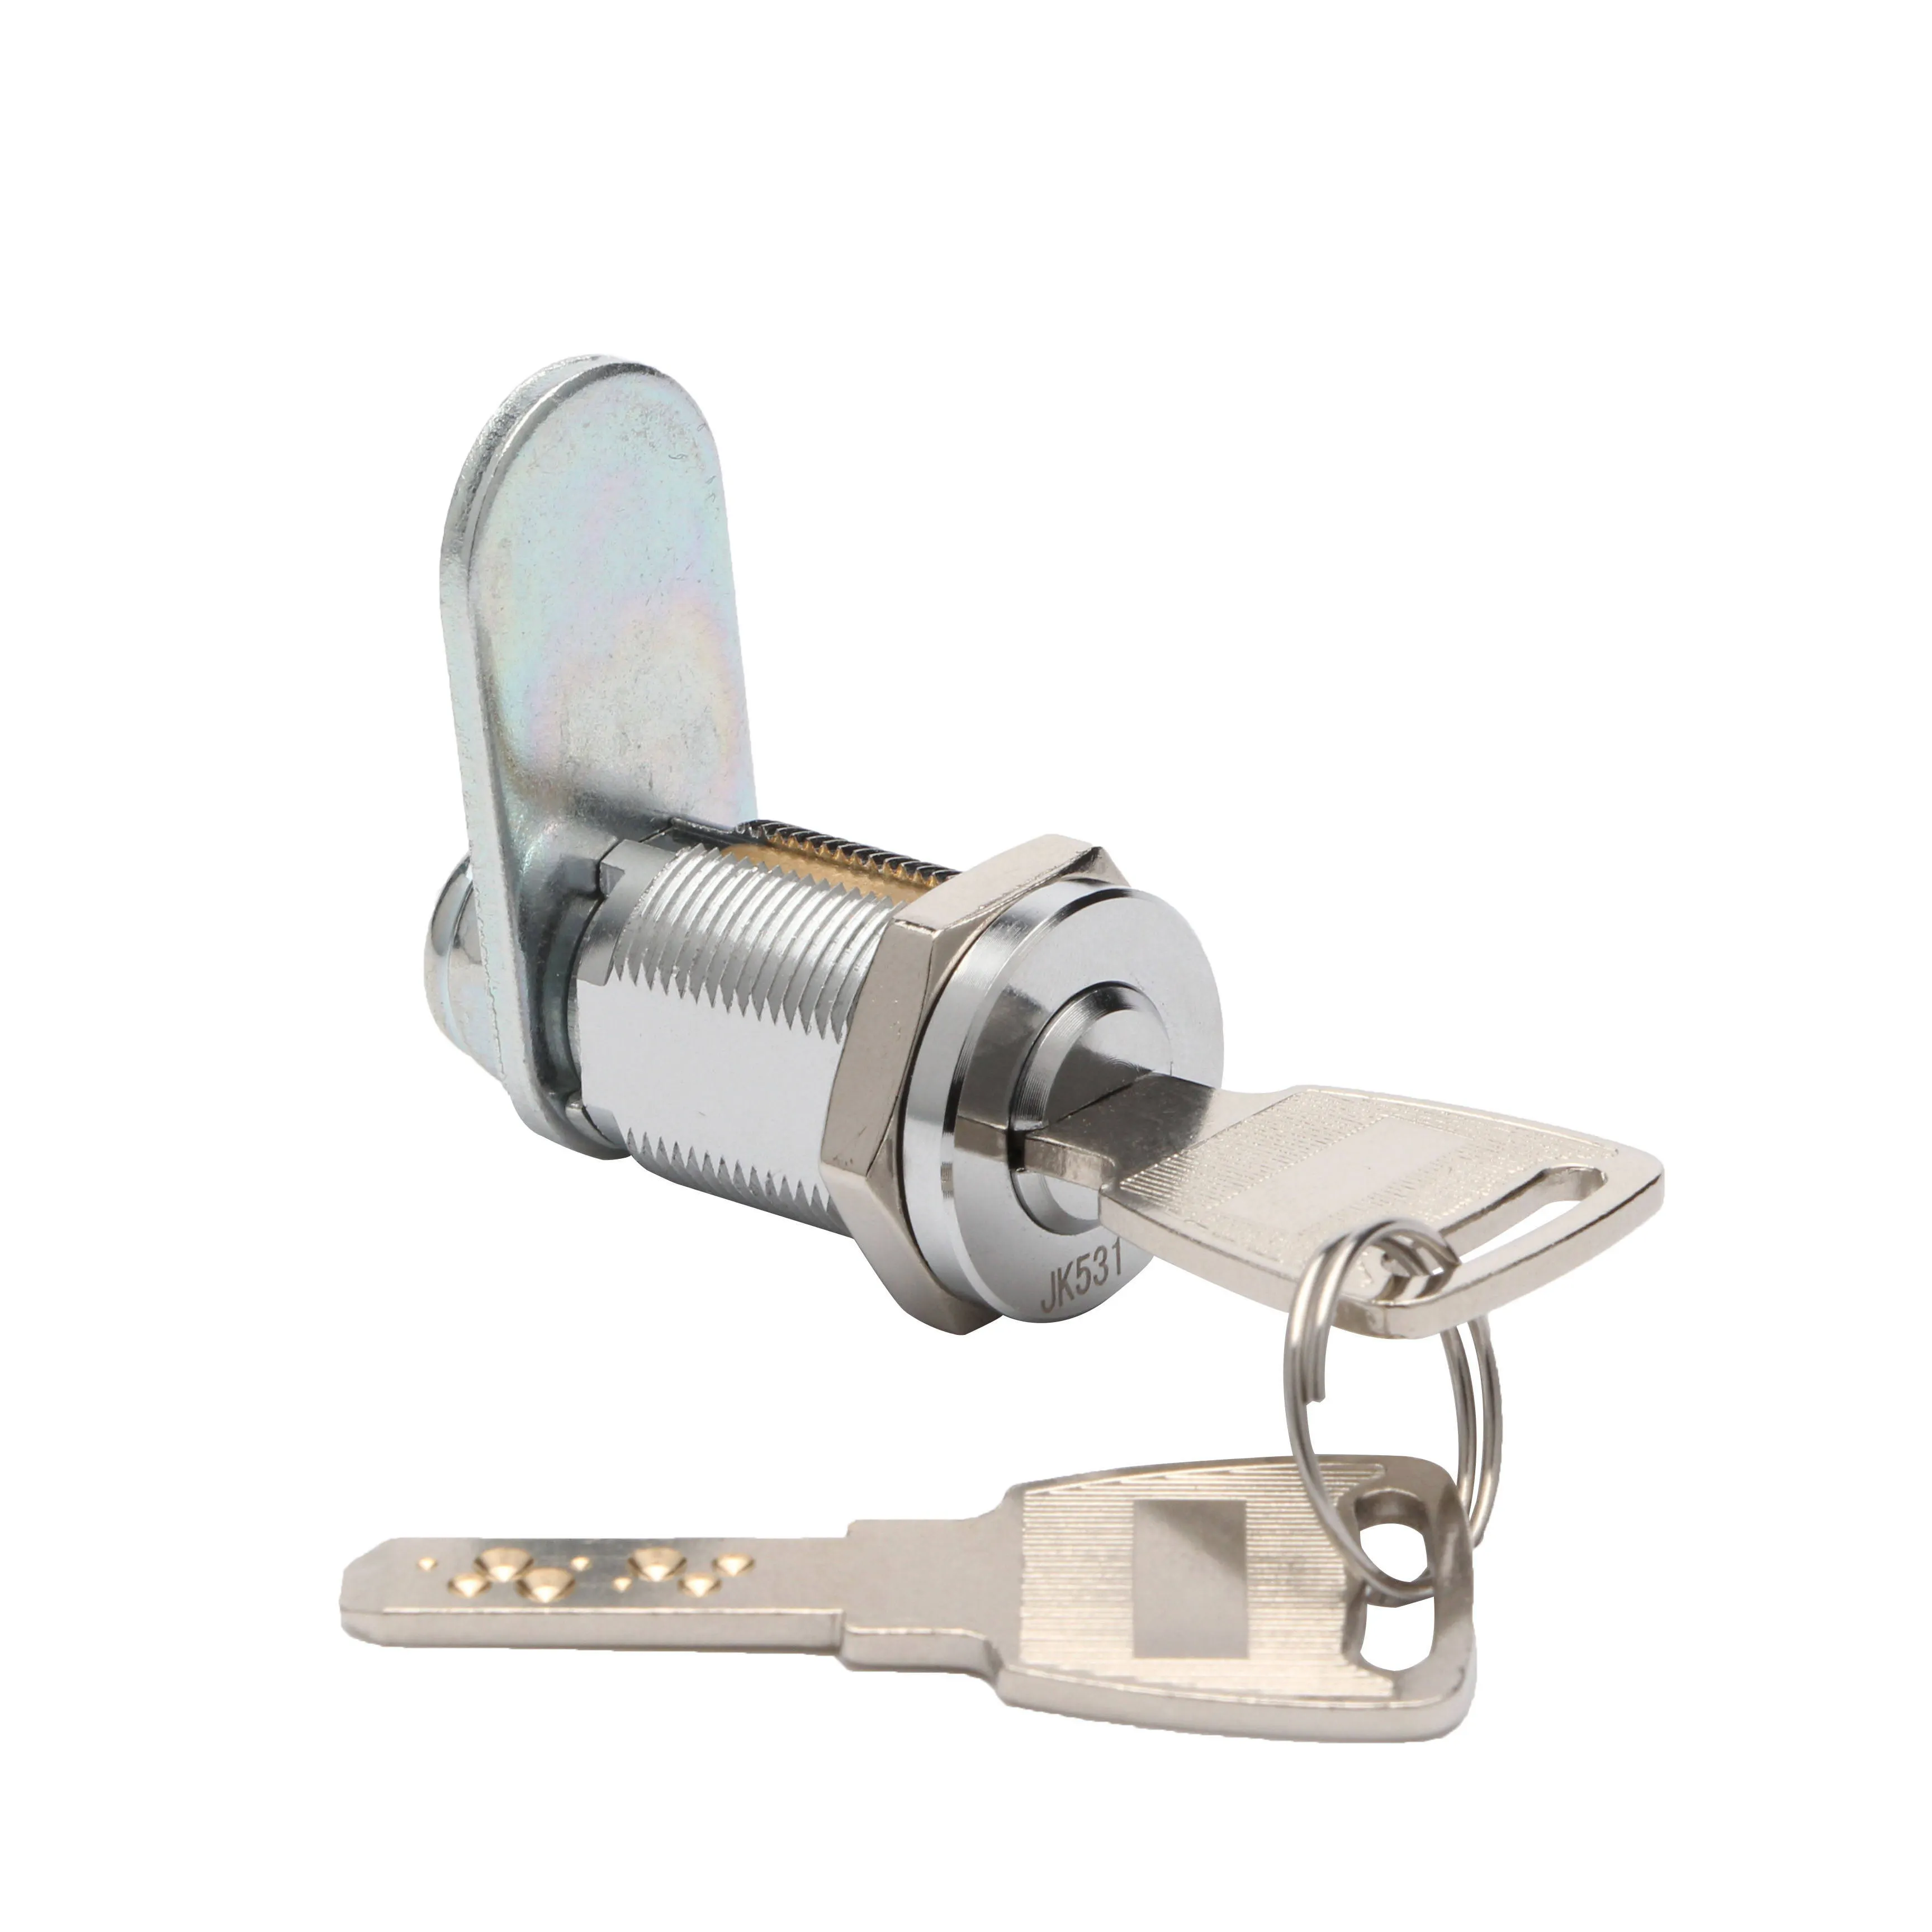 Hoge Beveiliging Jk531 Deur Cilinderkast Dimple Sleutel Cam Lock Automaat Cilinderslot